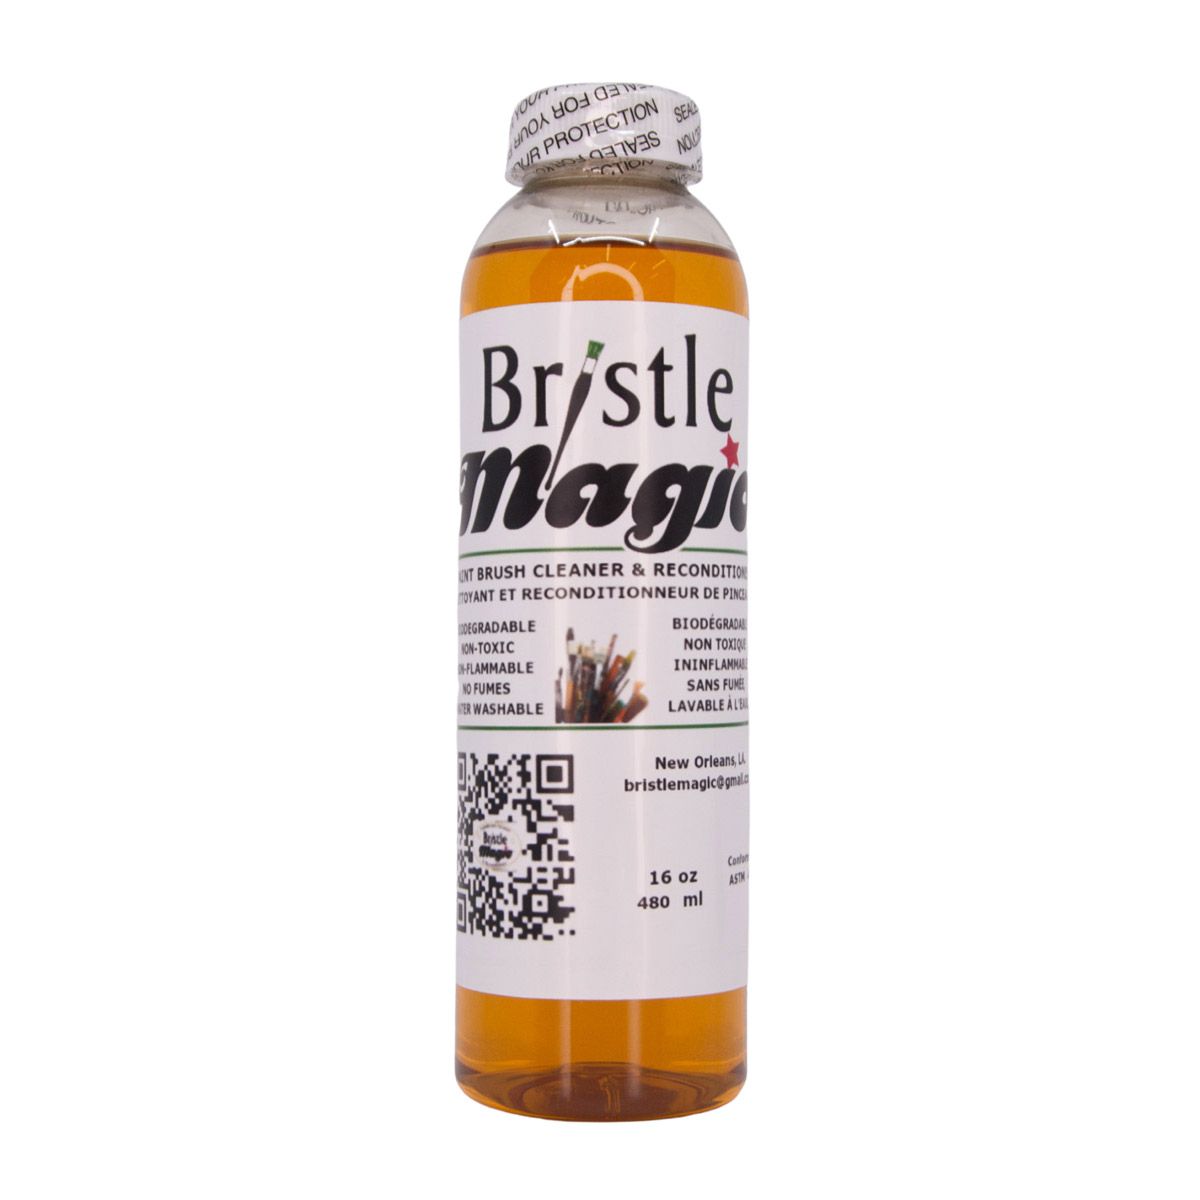 Bristle Magic Paint Brush Cleaner (480 ml) 16 oz